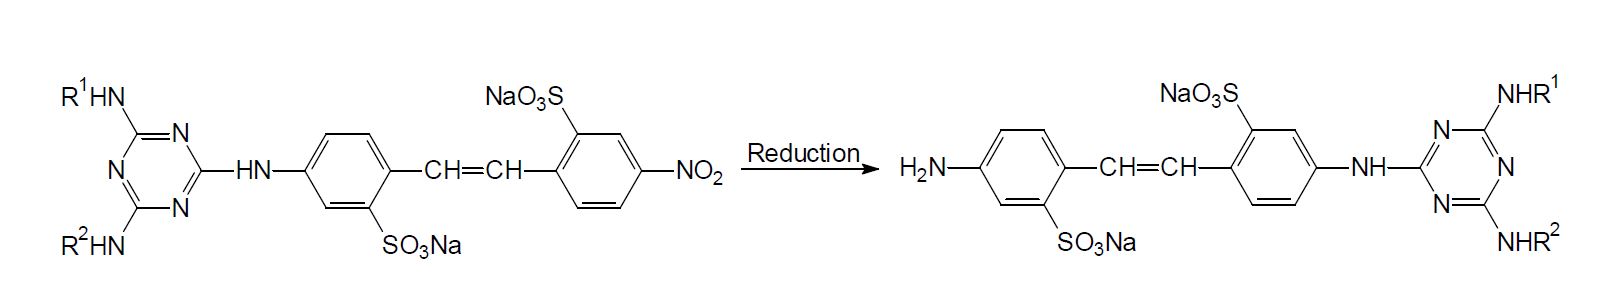 그림 7. 비대칭 Bis(triazinylamino)stilbene계 형광증백제 합성의 key 화합물의 일반적 구조.